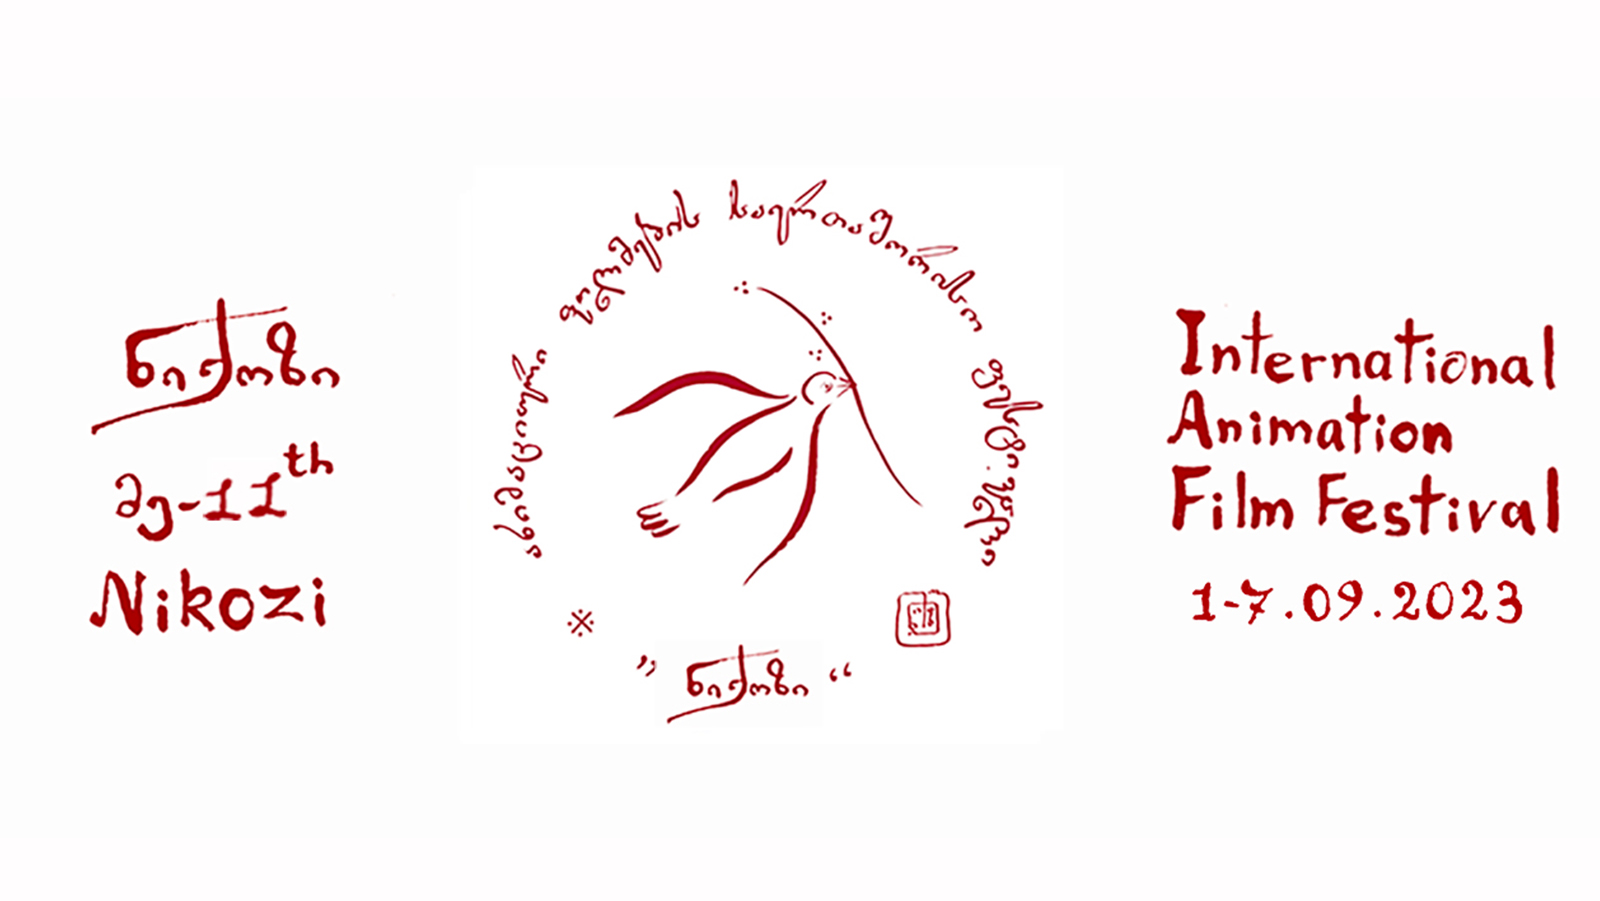 Nikozi International Animation Film Festival artwork. Courtesy image